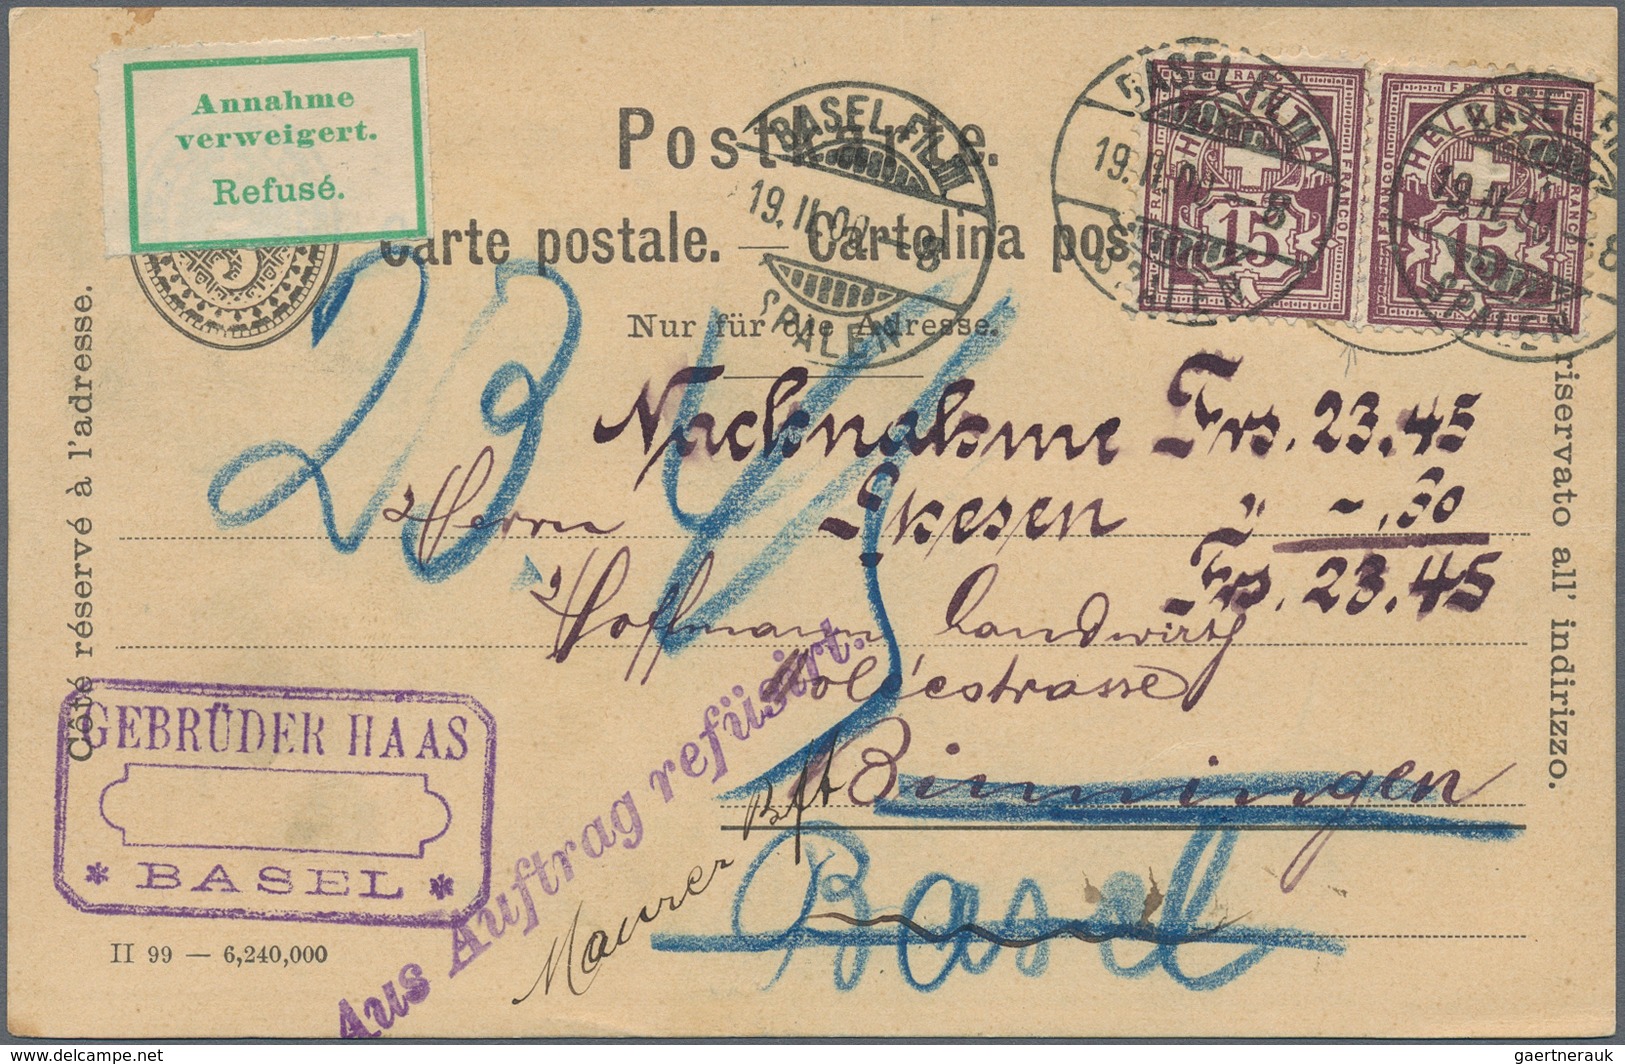 Schweiz: 1854-Moderne: Mehr als 600 Briefe, Postkarten, Ansichtskarten etc., dabei einige Belege mit